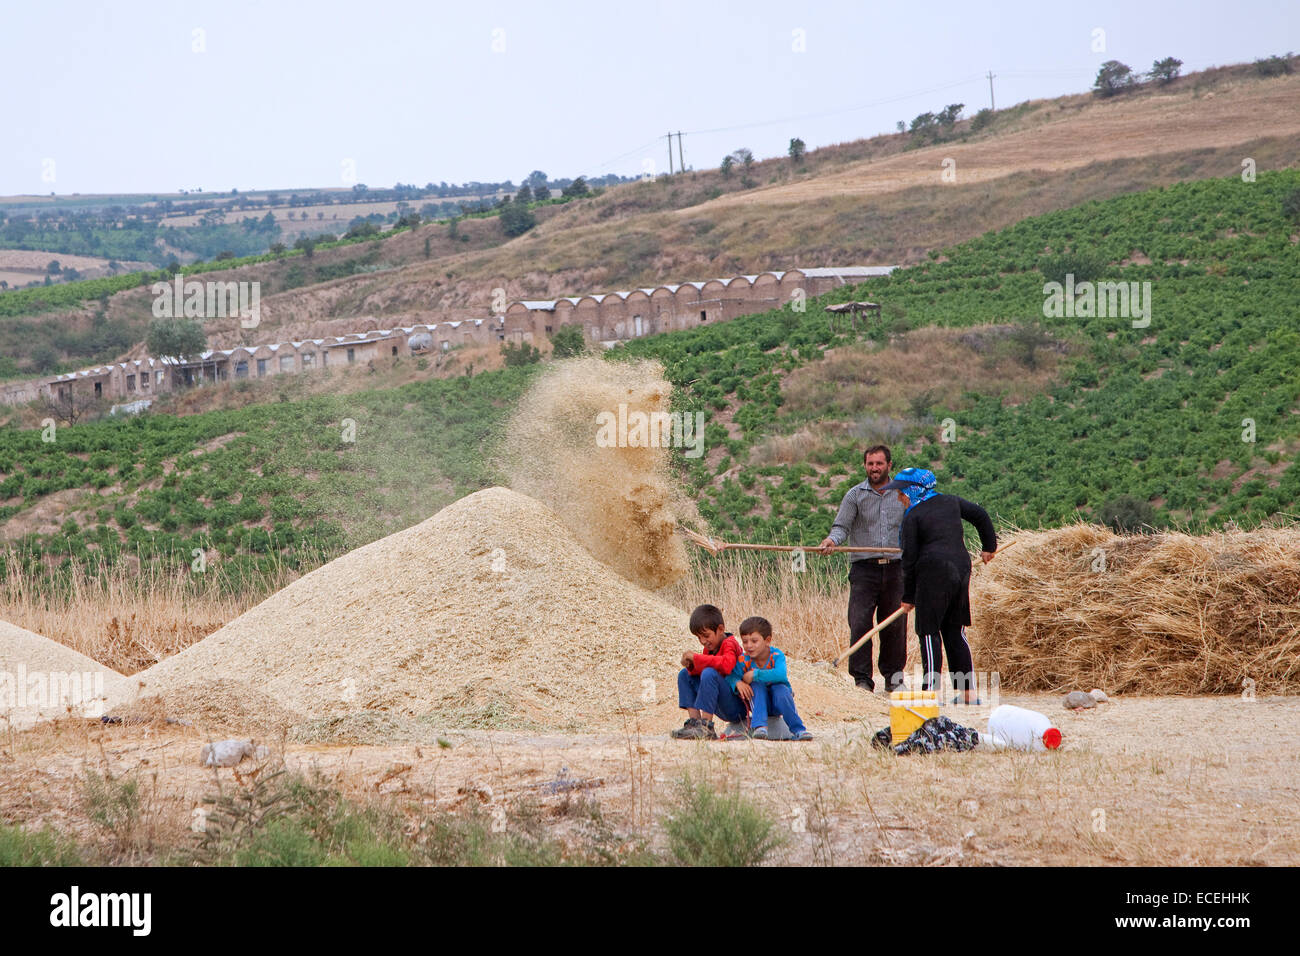 El agricultor con la esposa y los niños que trabajan en la cosecha de cereales en Irán Foto de stock